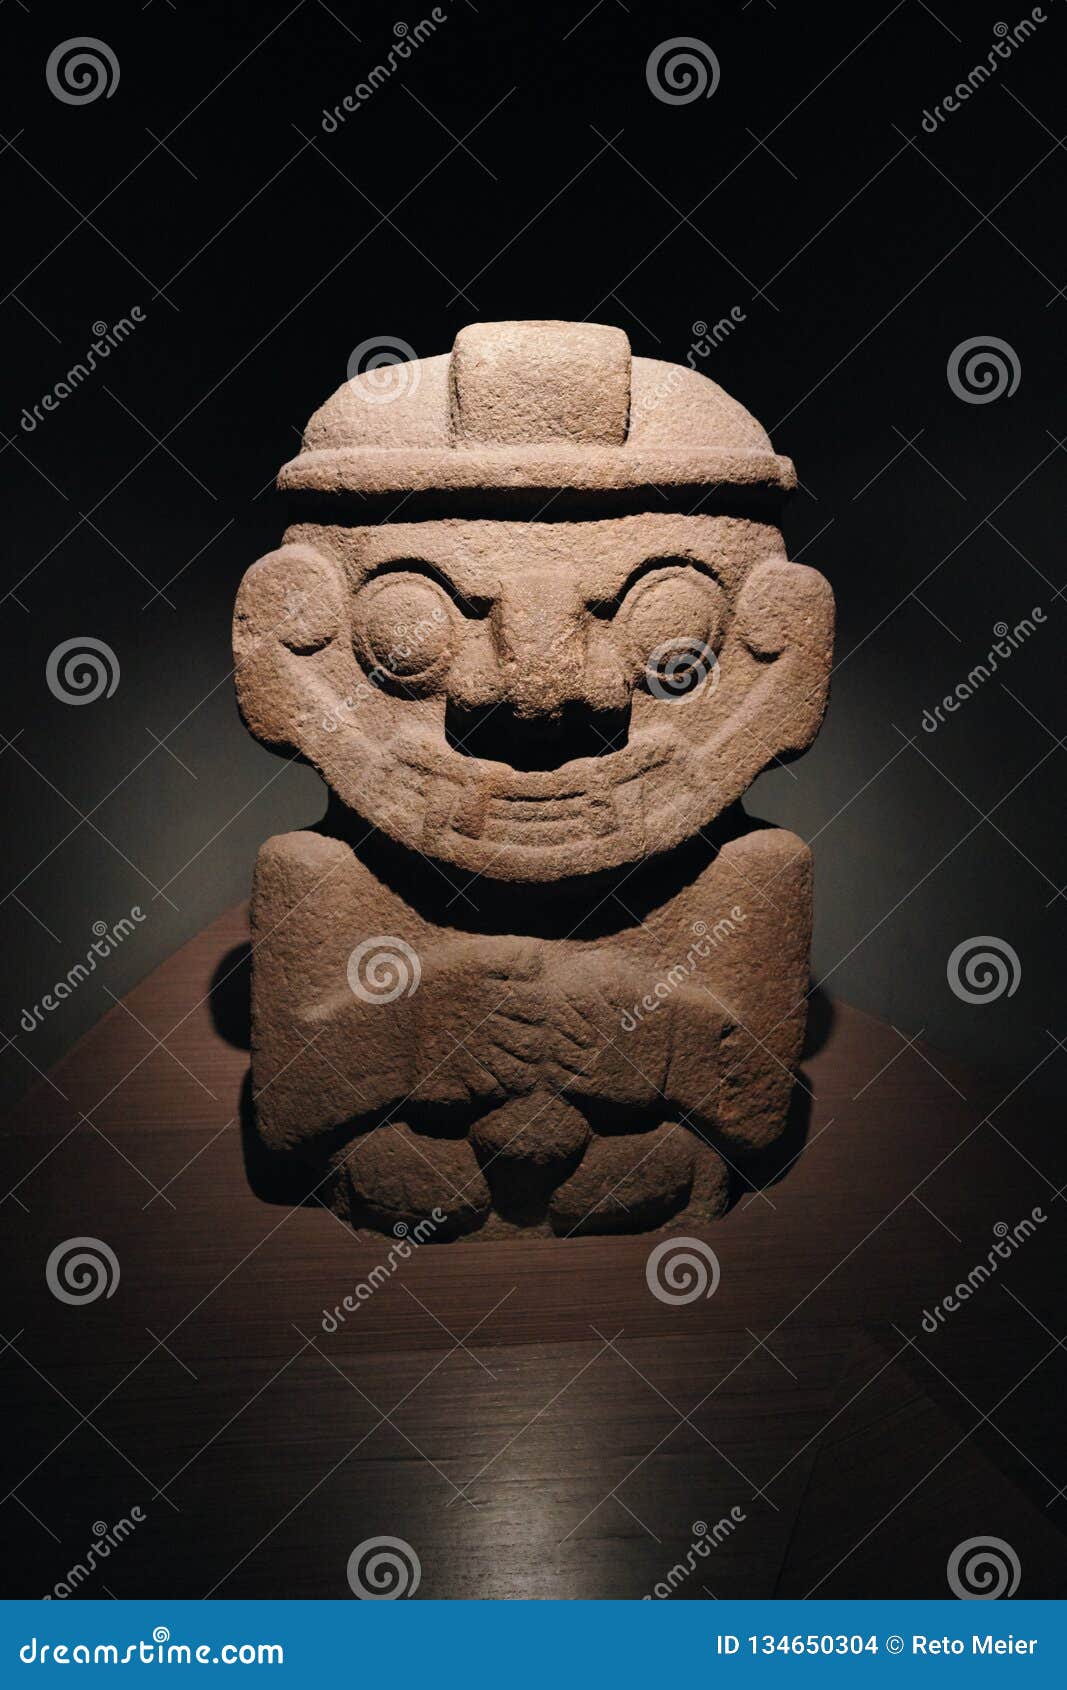 maya figure made out of stone